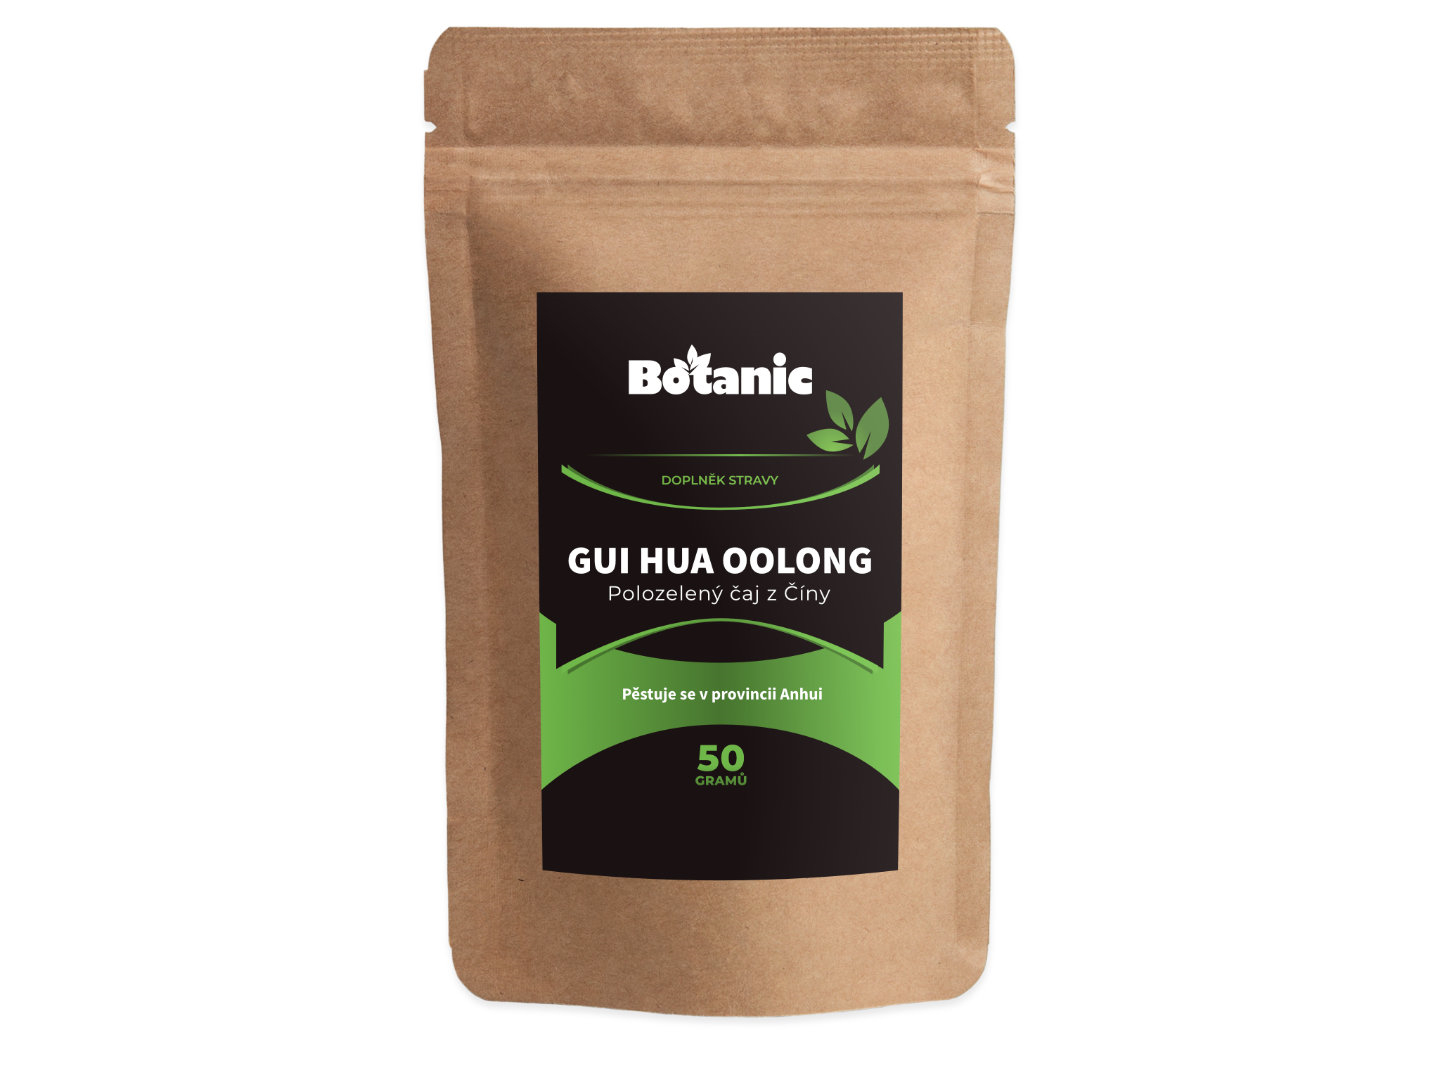 Botanic Gui Hua oolong - Polozelený čaj, Tchaj-wan 50g